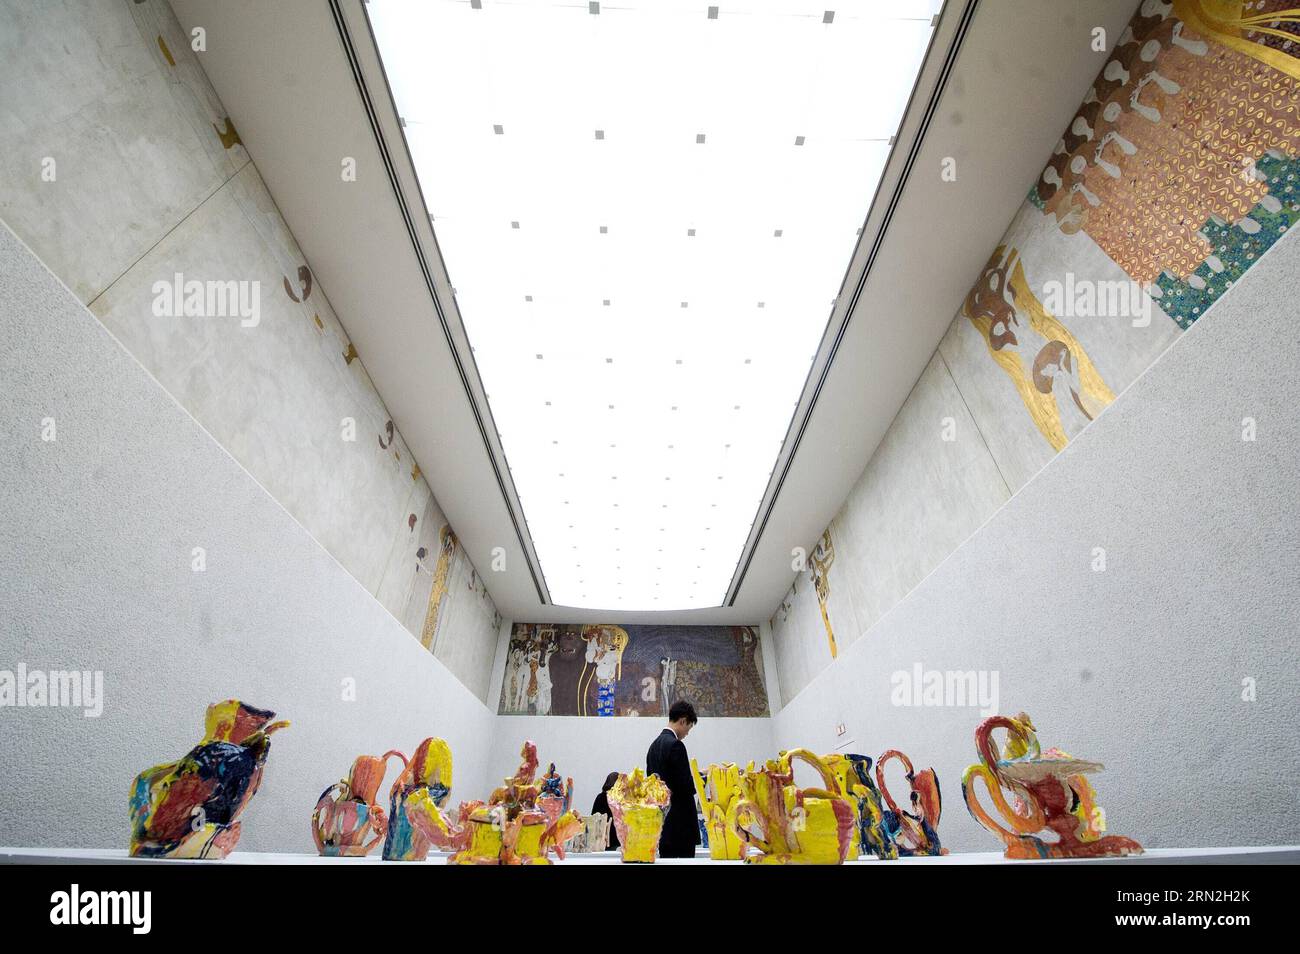 150307 -- VIENNE, le 6 mars 2015 -- une photo prise le 6 mars 2015 montre la Frise Beethoven au bâtiment de la Sécession de Vienne, en Autriche. L une des œuvres d art les plus précieuses d Autriche, Beethoven Frieze de Gustav Klimt, semble susceptible de rester dans le pays pour le moment après qu un panel d experts a rejeté vendredi les demandes de restitution des descendants de ses anciens propriétaires juifs. Zhf AUTRICHE-VIENNE-BEETHOVEN FRISE-RESTITUTION-ÉVITER QianxYi PUBLICATIONxNOTxINxCHN Banque D'Images